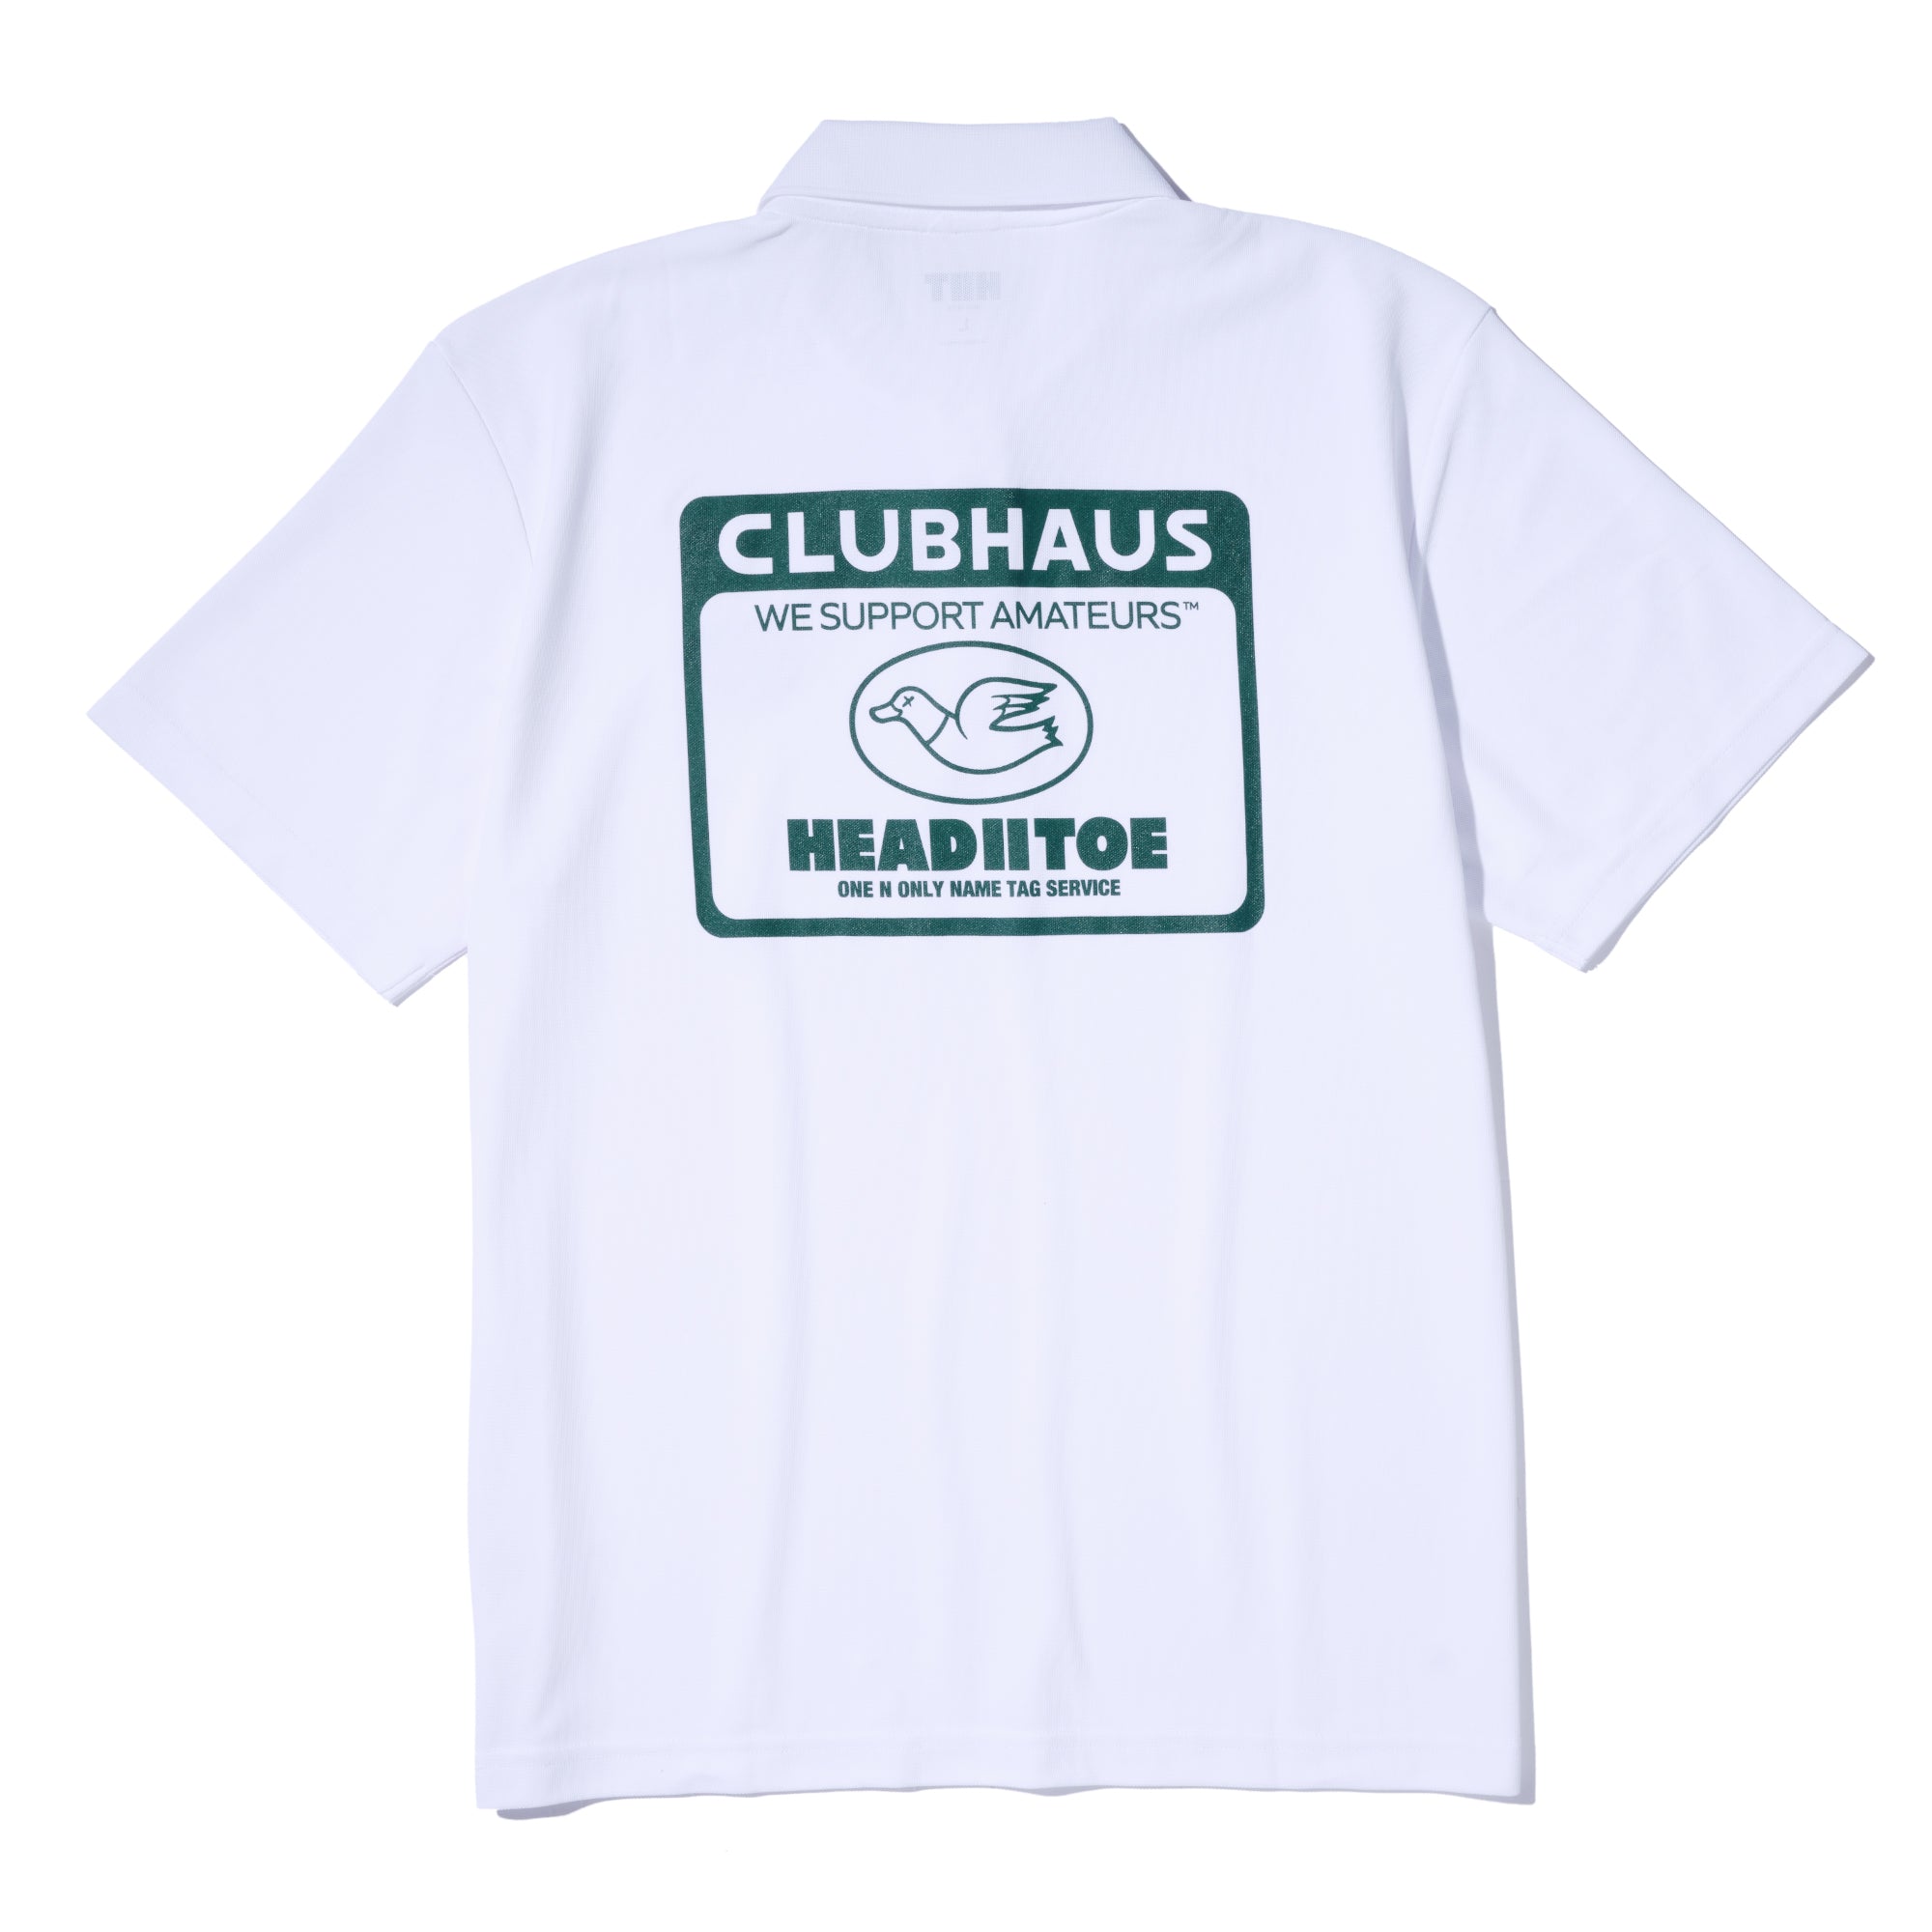 季節のおすすめ商品 CLUBHAUSのCollared Sweat S/S メンズウェア ...